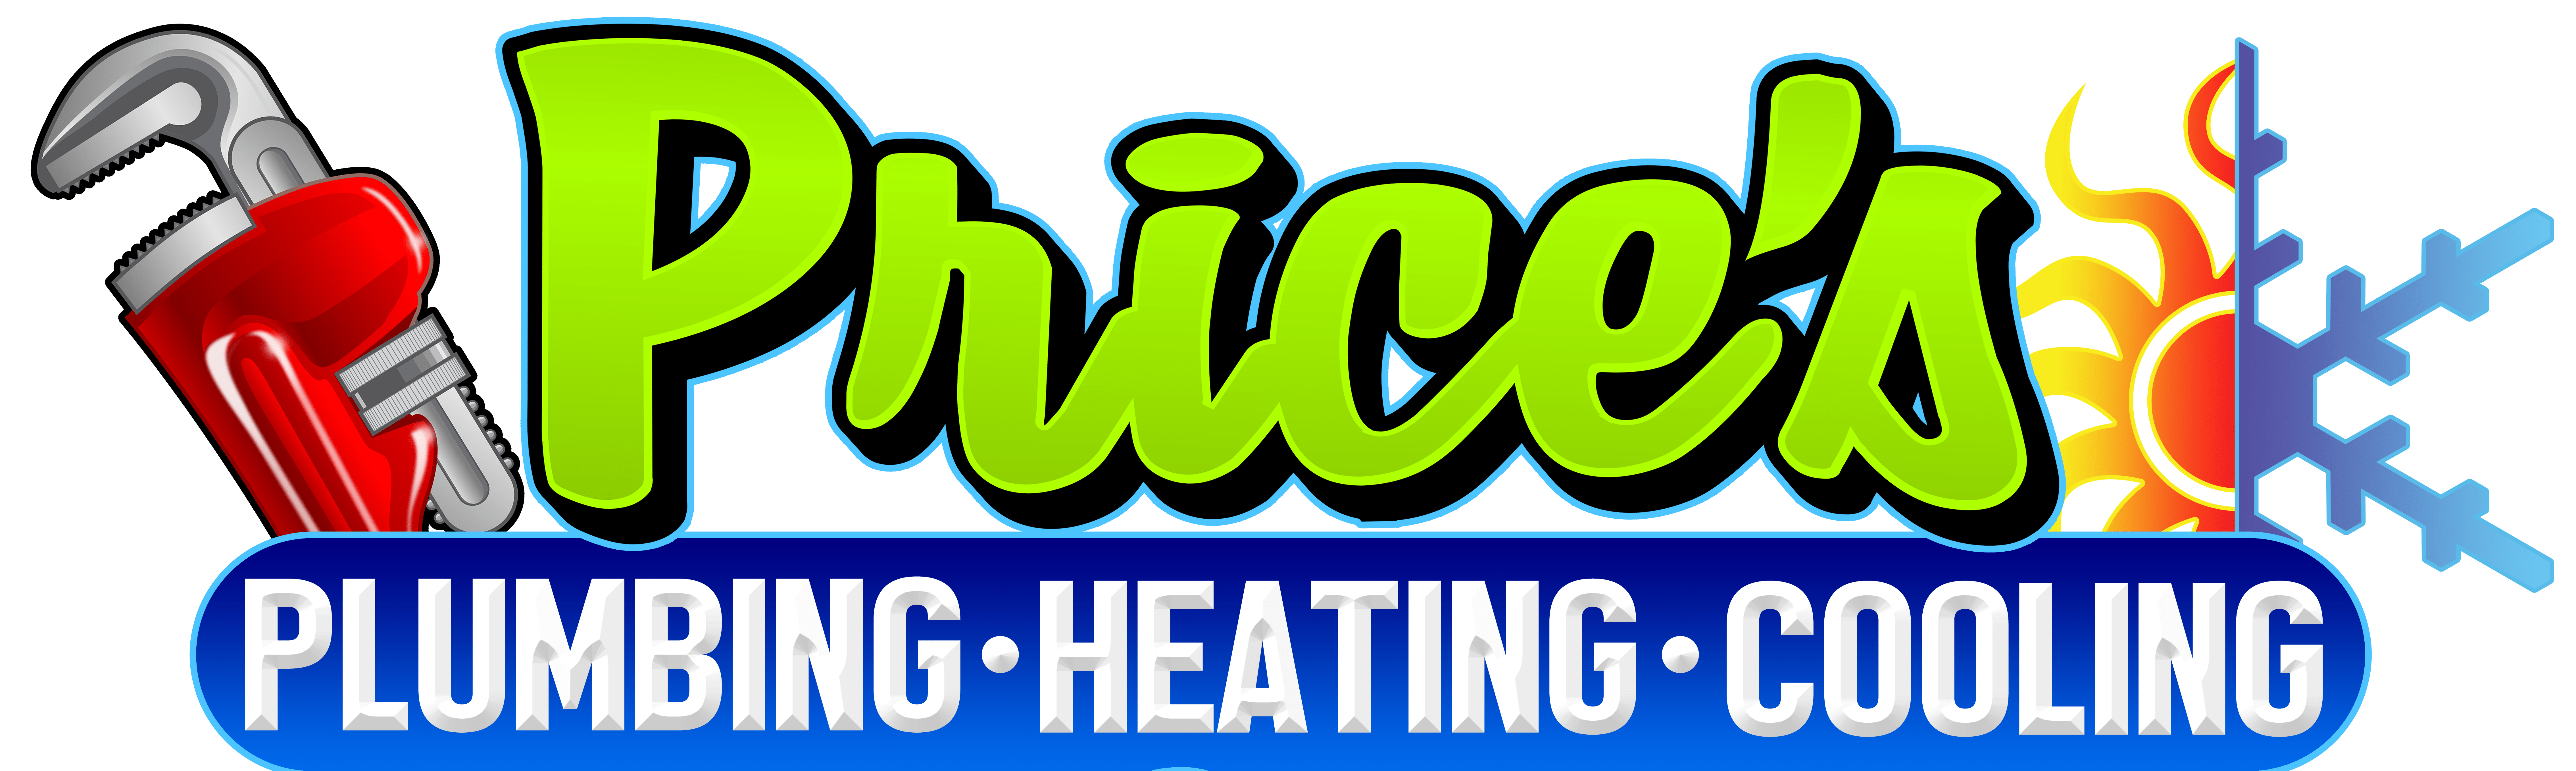 Price's Plumbing, Heating & Cooling